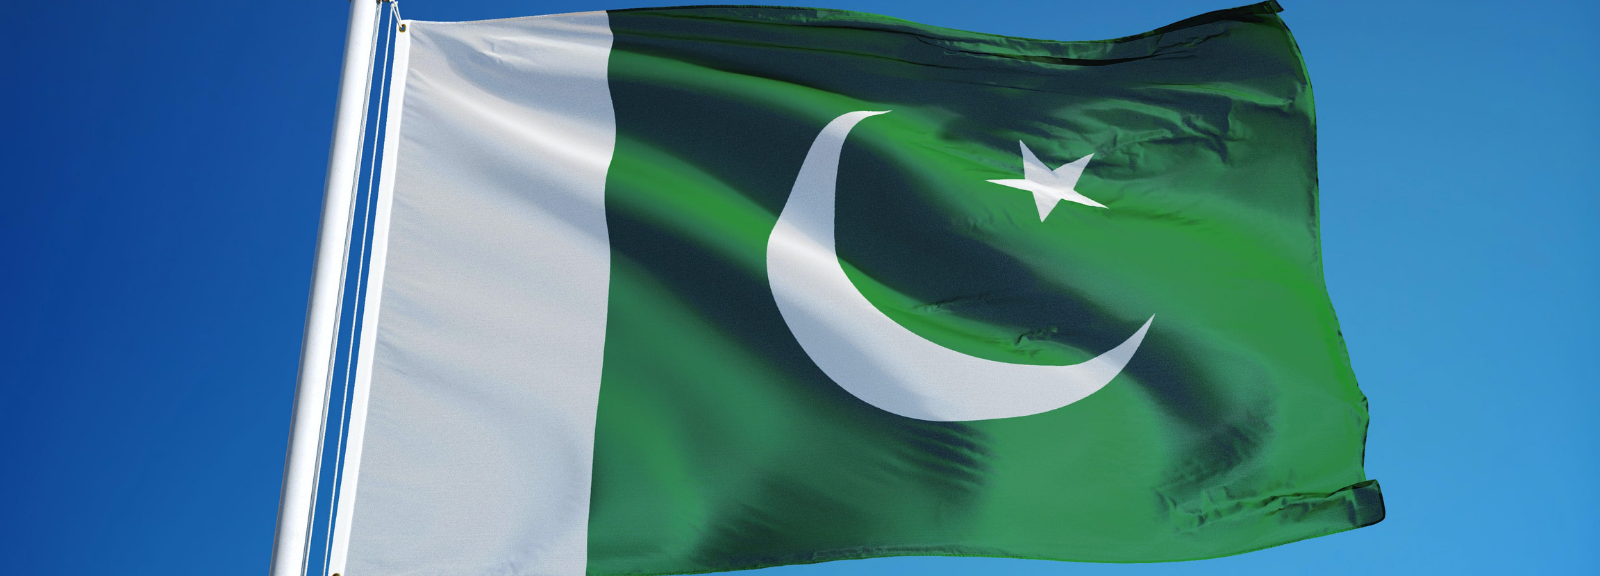 Pakistan flag on a pole.